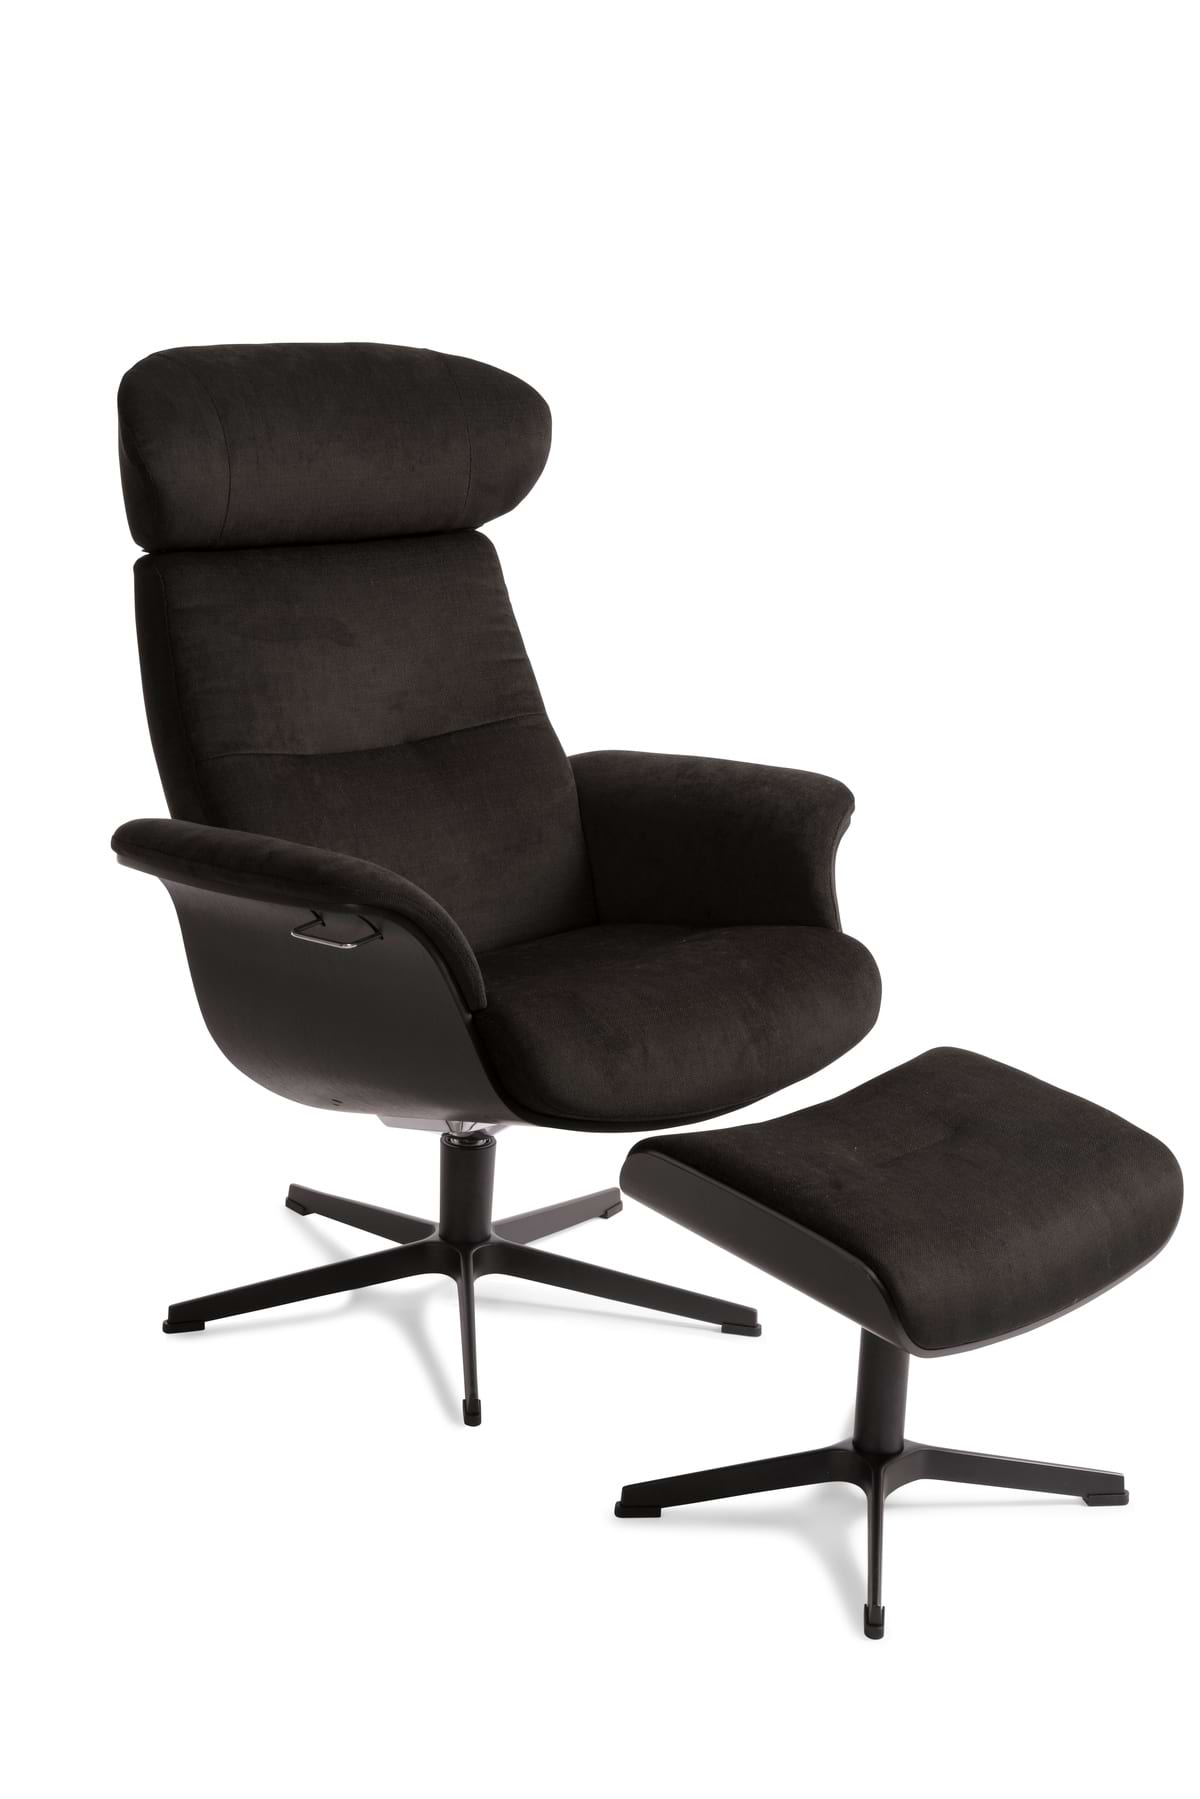 TimeOut Sessel und Hocker Stoff schwarz Schale Eiche schwarz